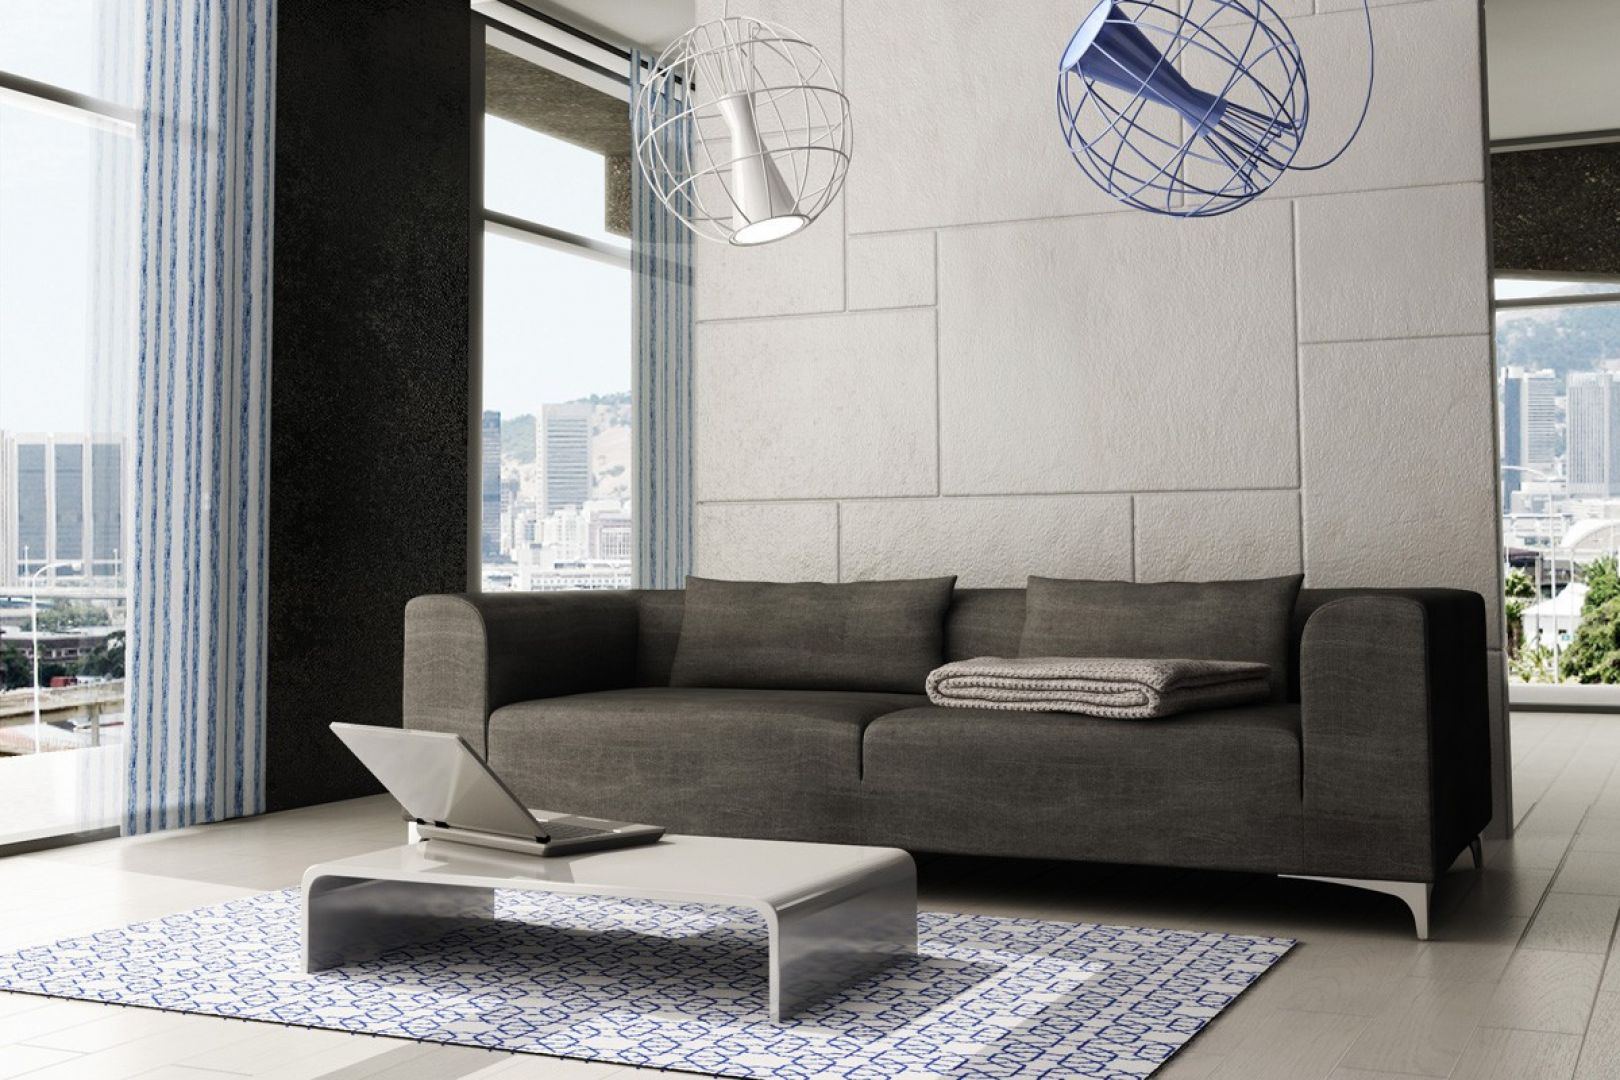 Idealna do minimalistycznego salonu - szara, geometryczna sofa. Fot. Adriana Furniture